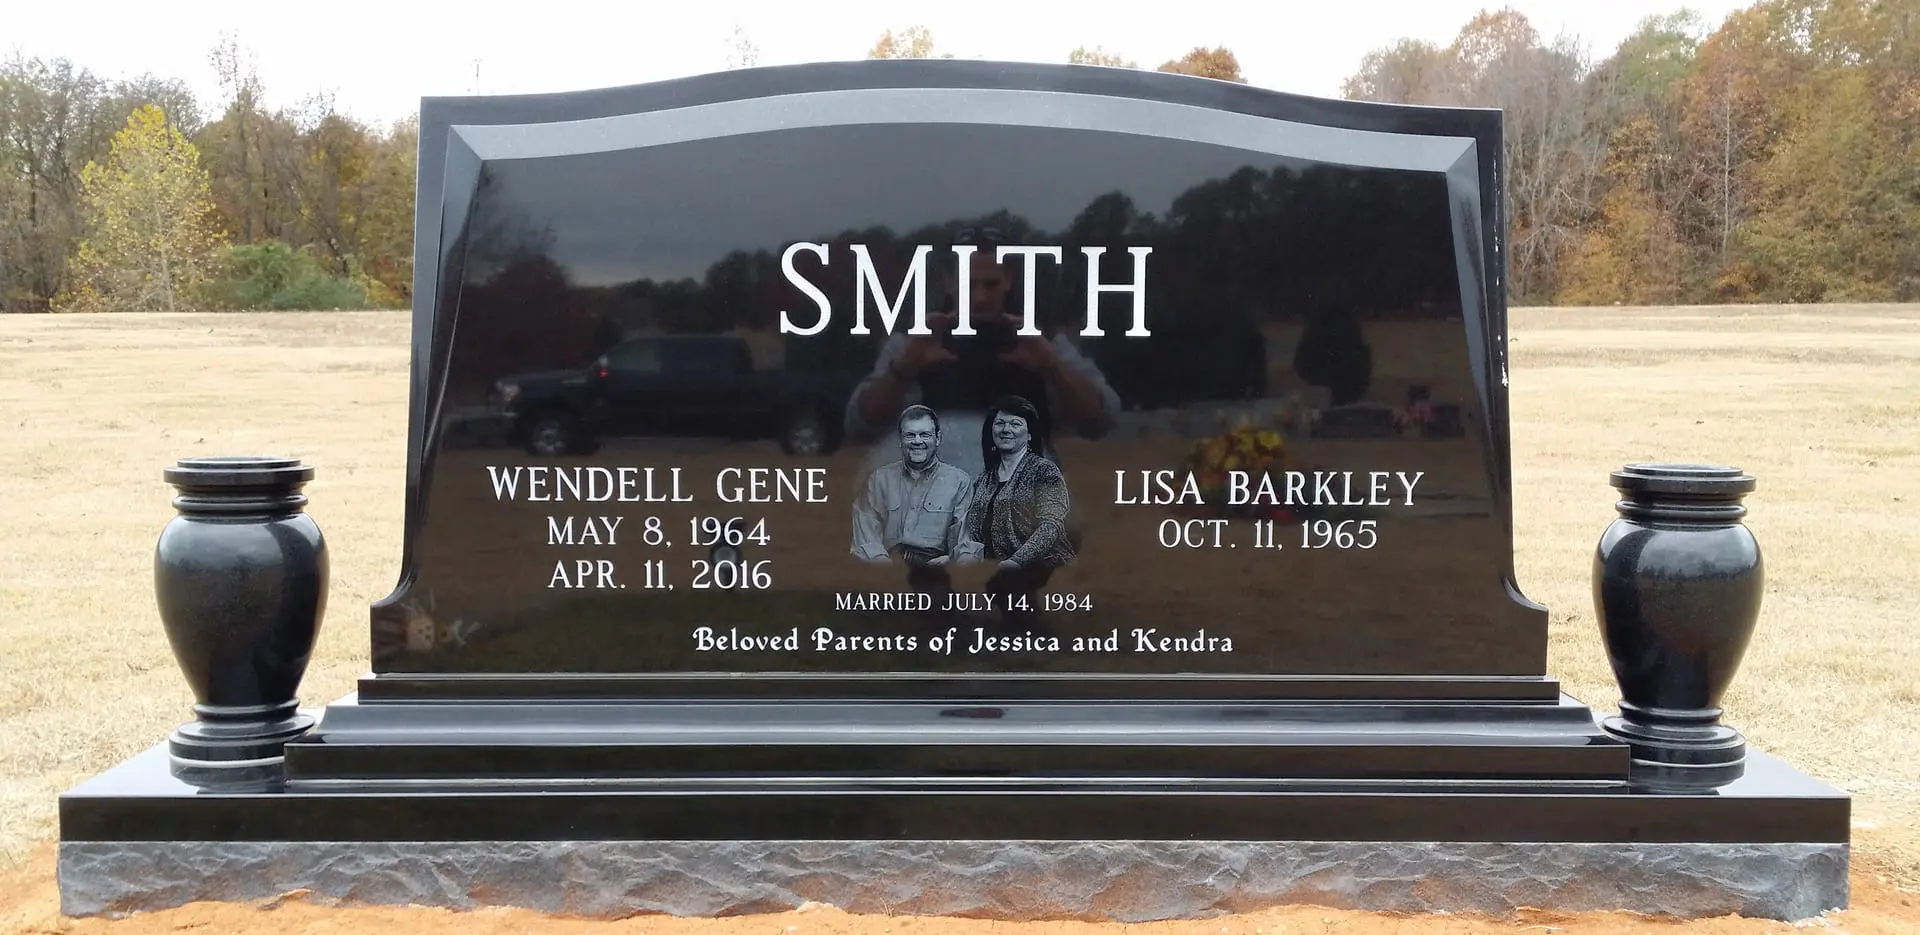 A memorial slab for Wendell Gene and Lisa Barkley